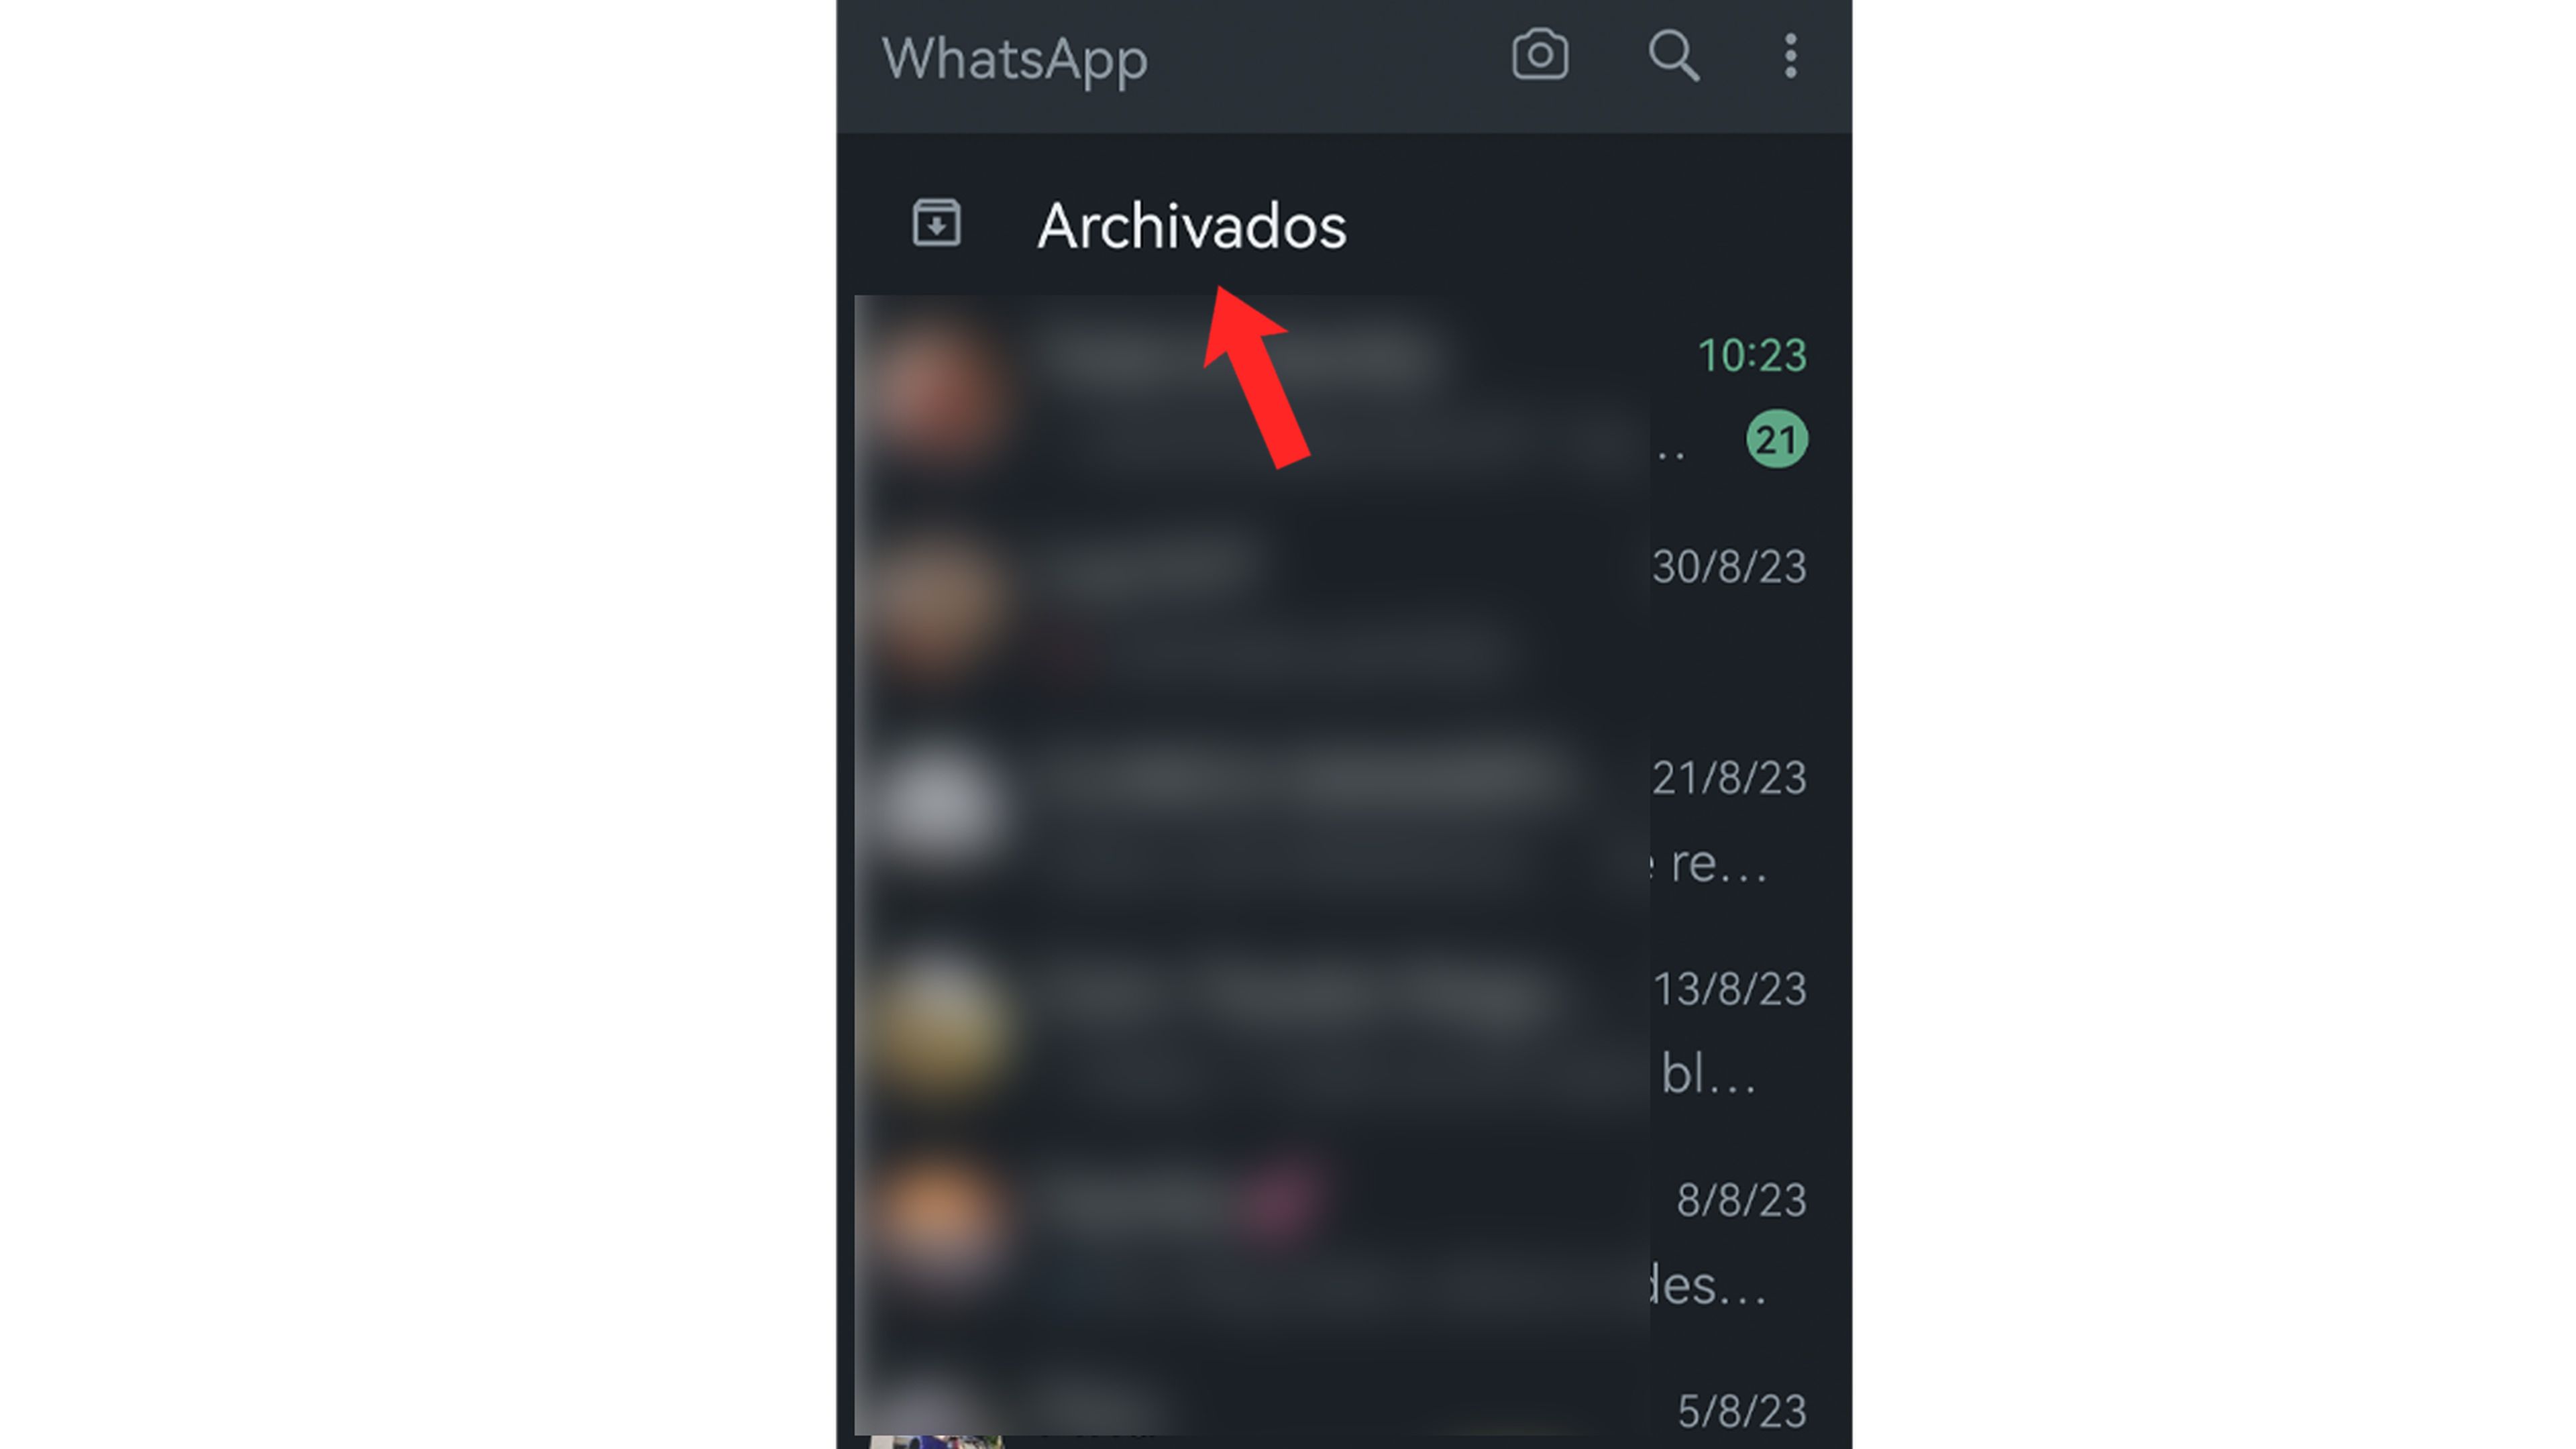 Cómo acceder a los chats archivados de WhatsApp Android